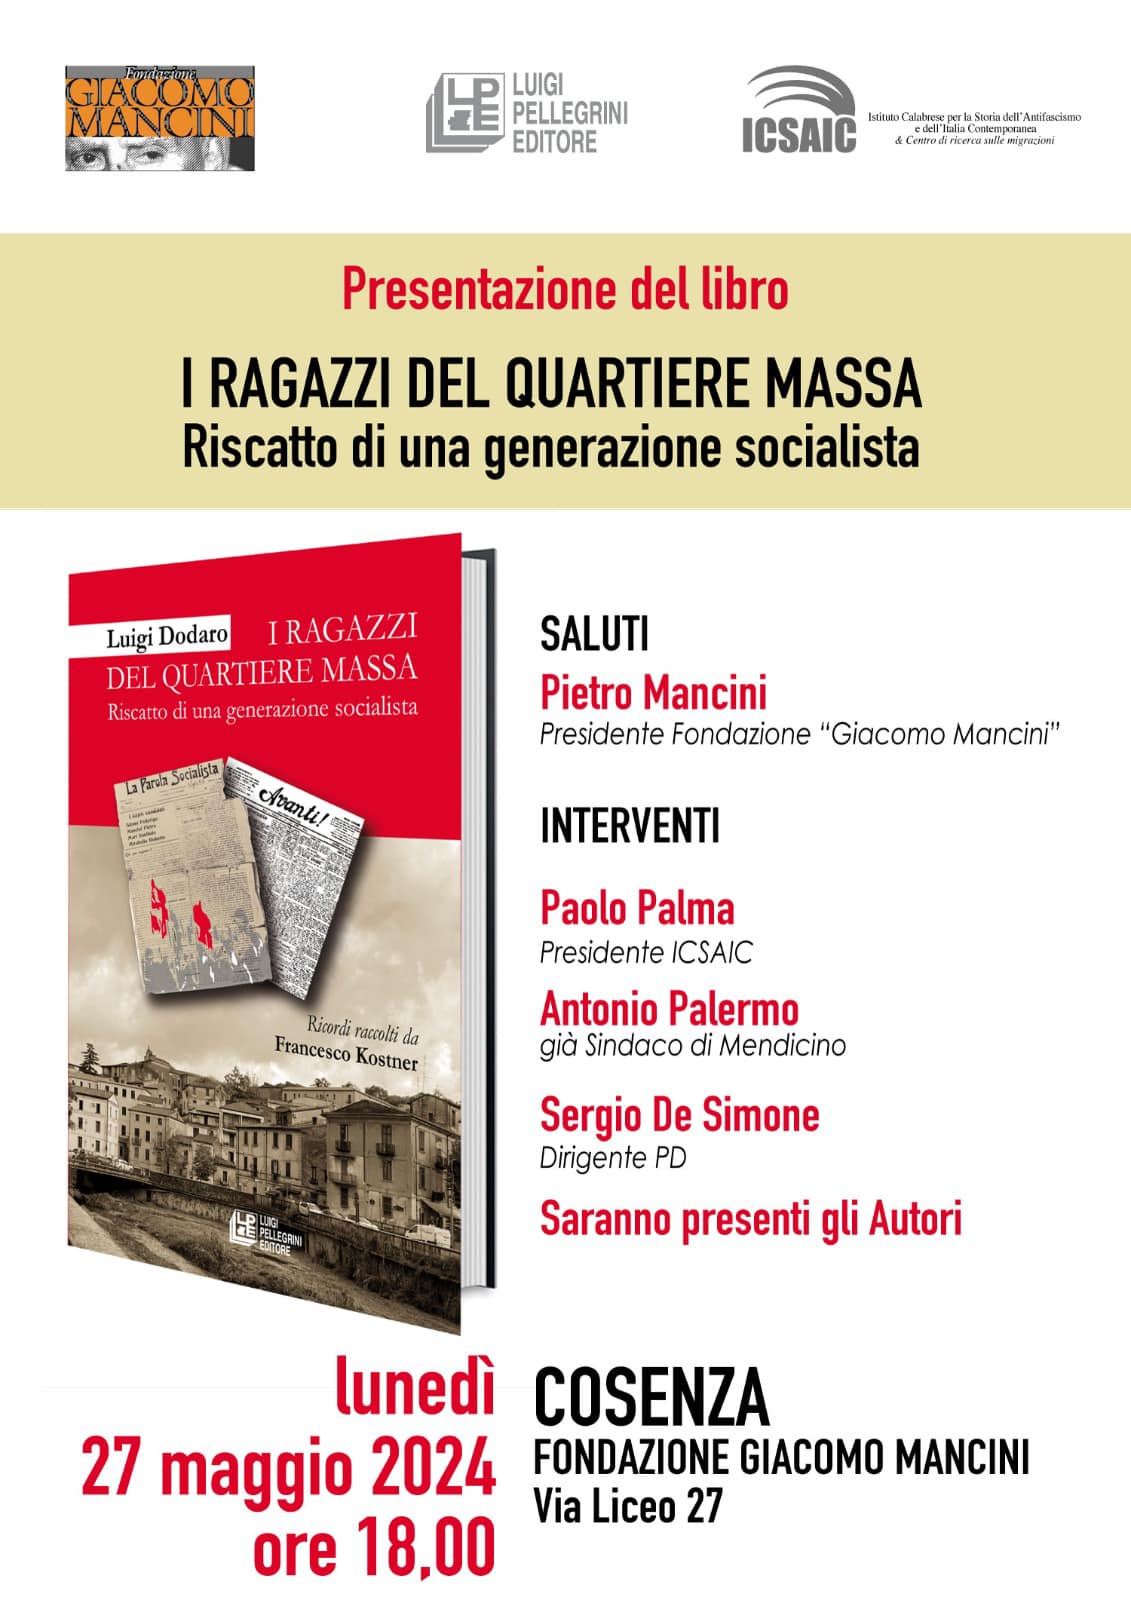 Pagine di socialismo a Cosenza in un libro sul quartiere Massa